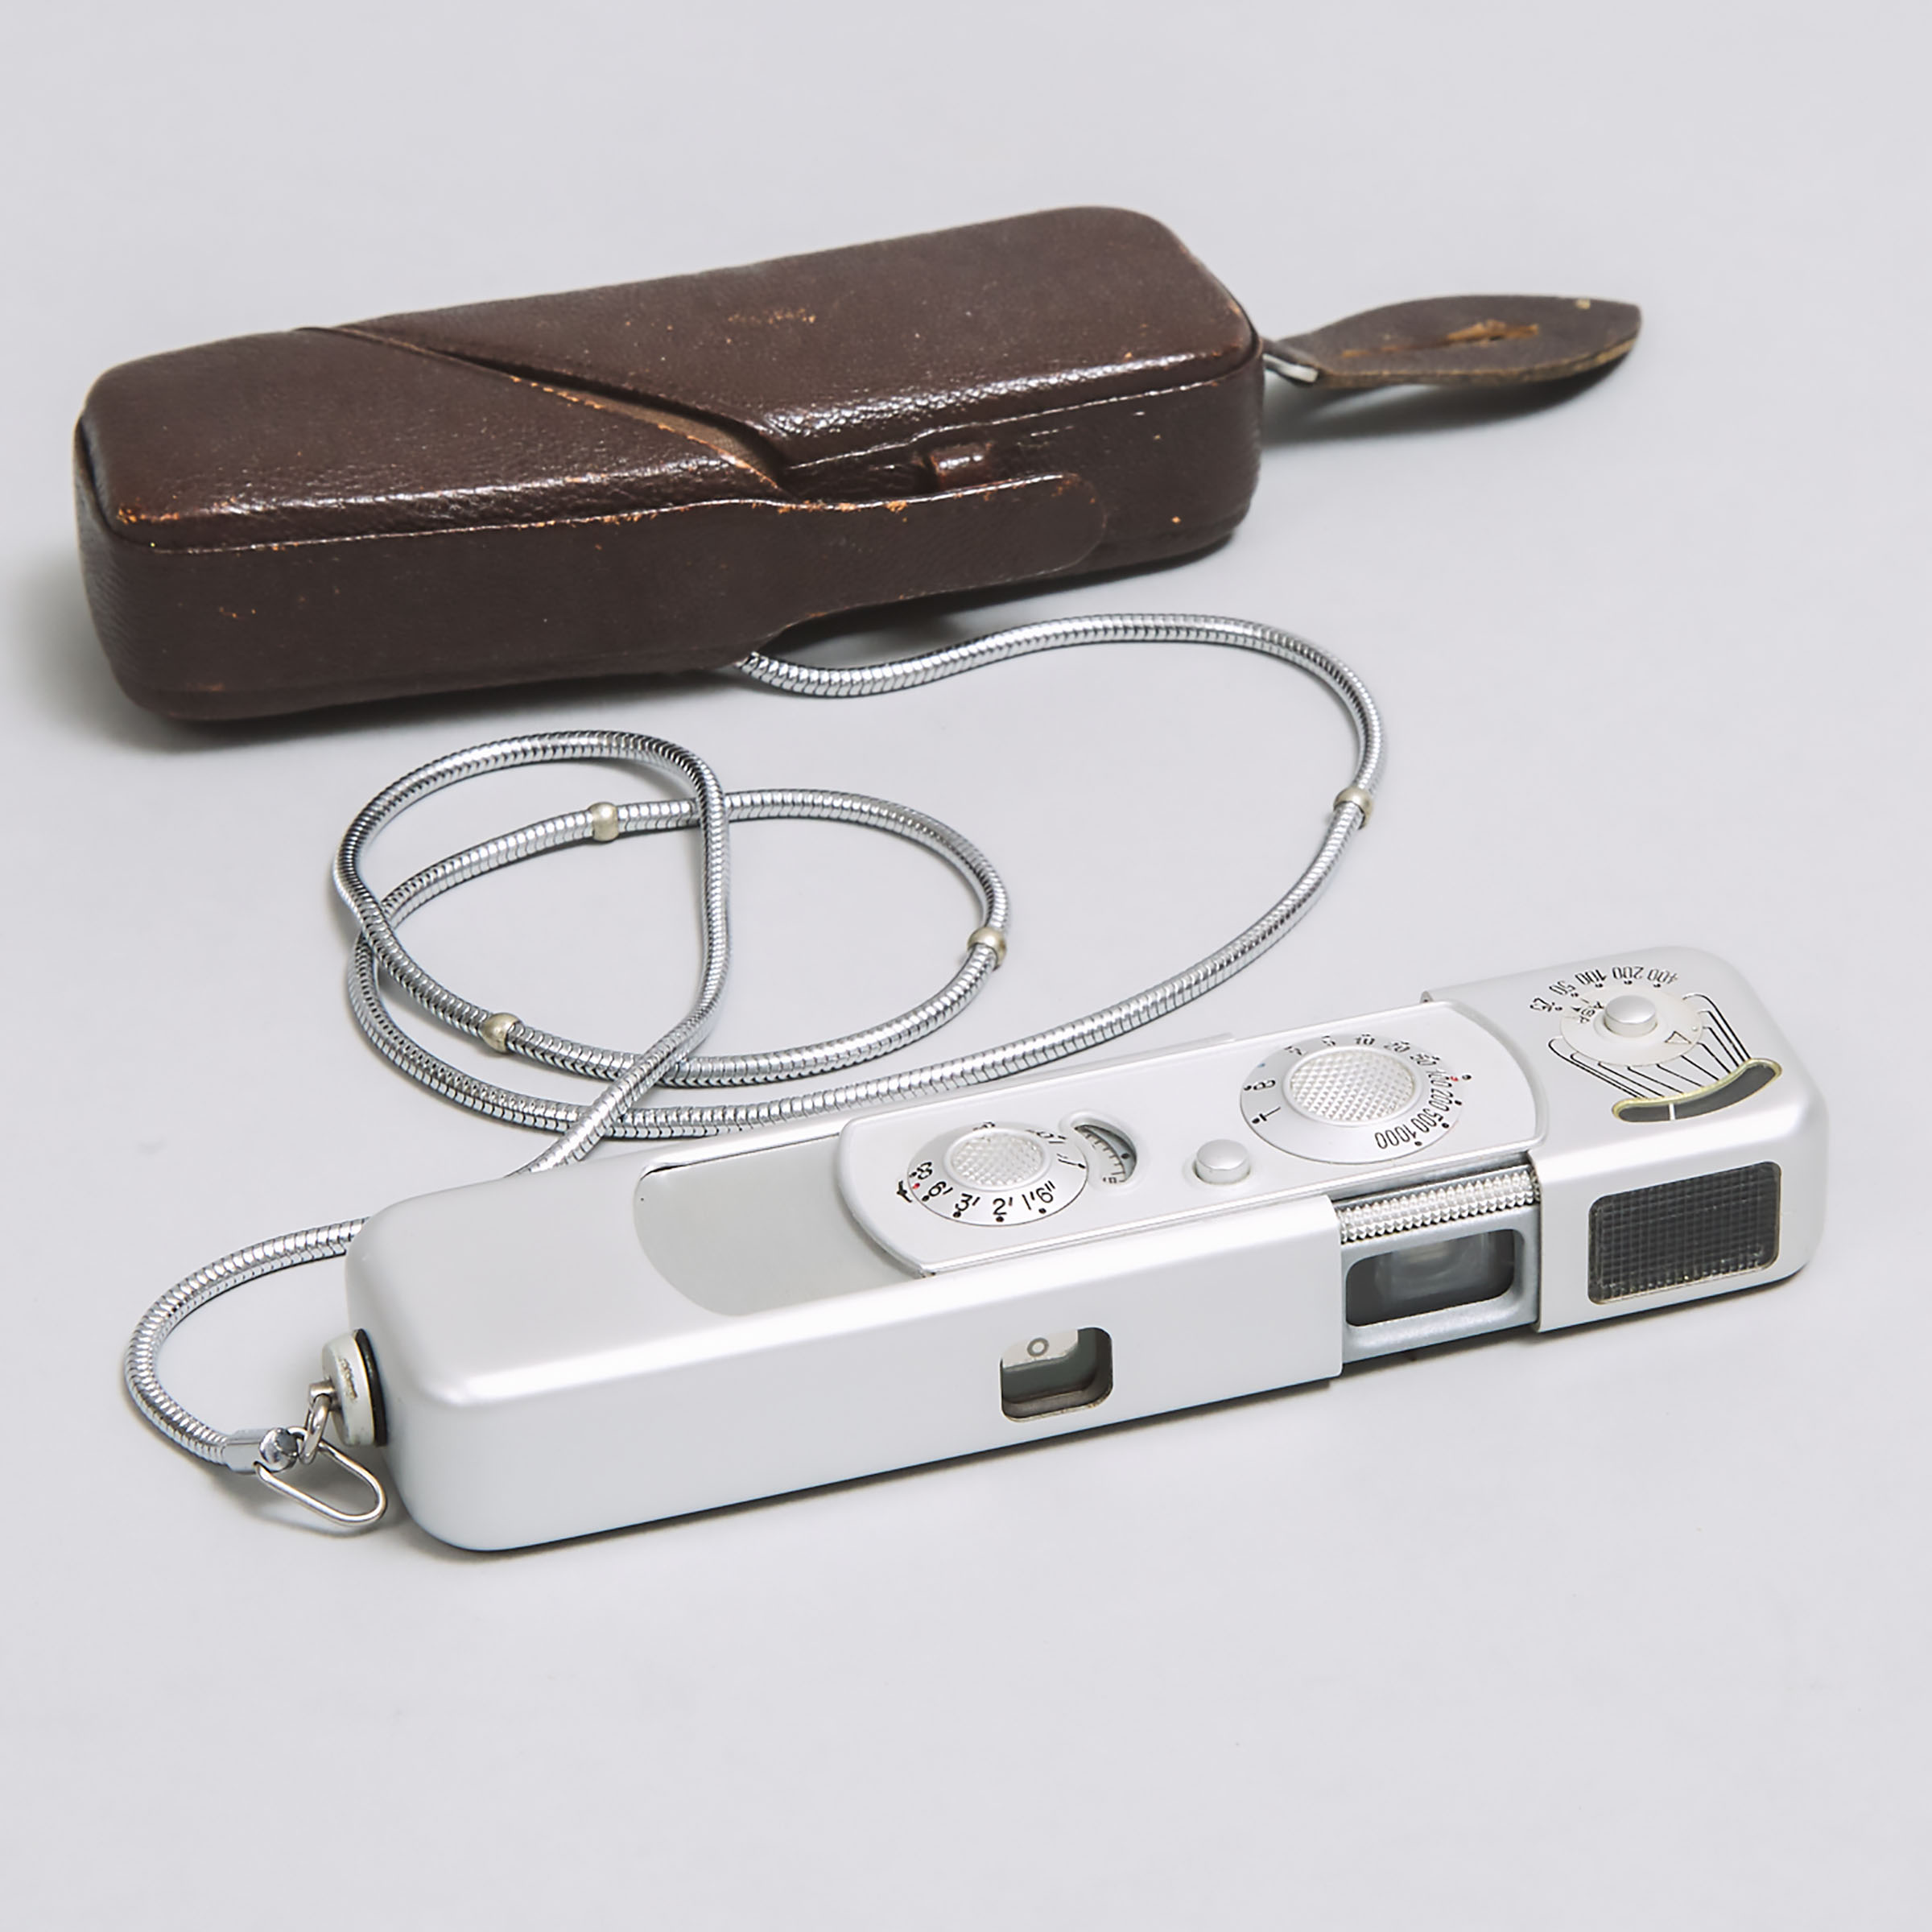 German Minox Subminiature 'Spy' Camera, c.1958